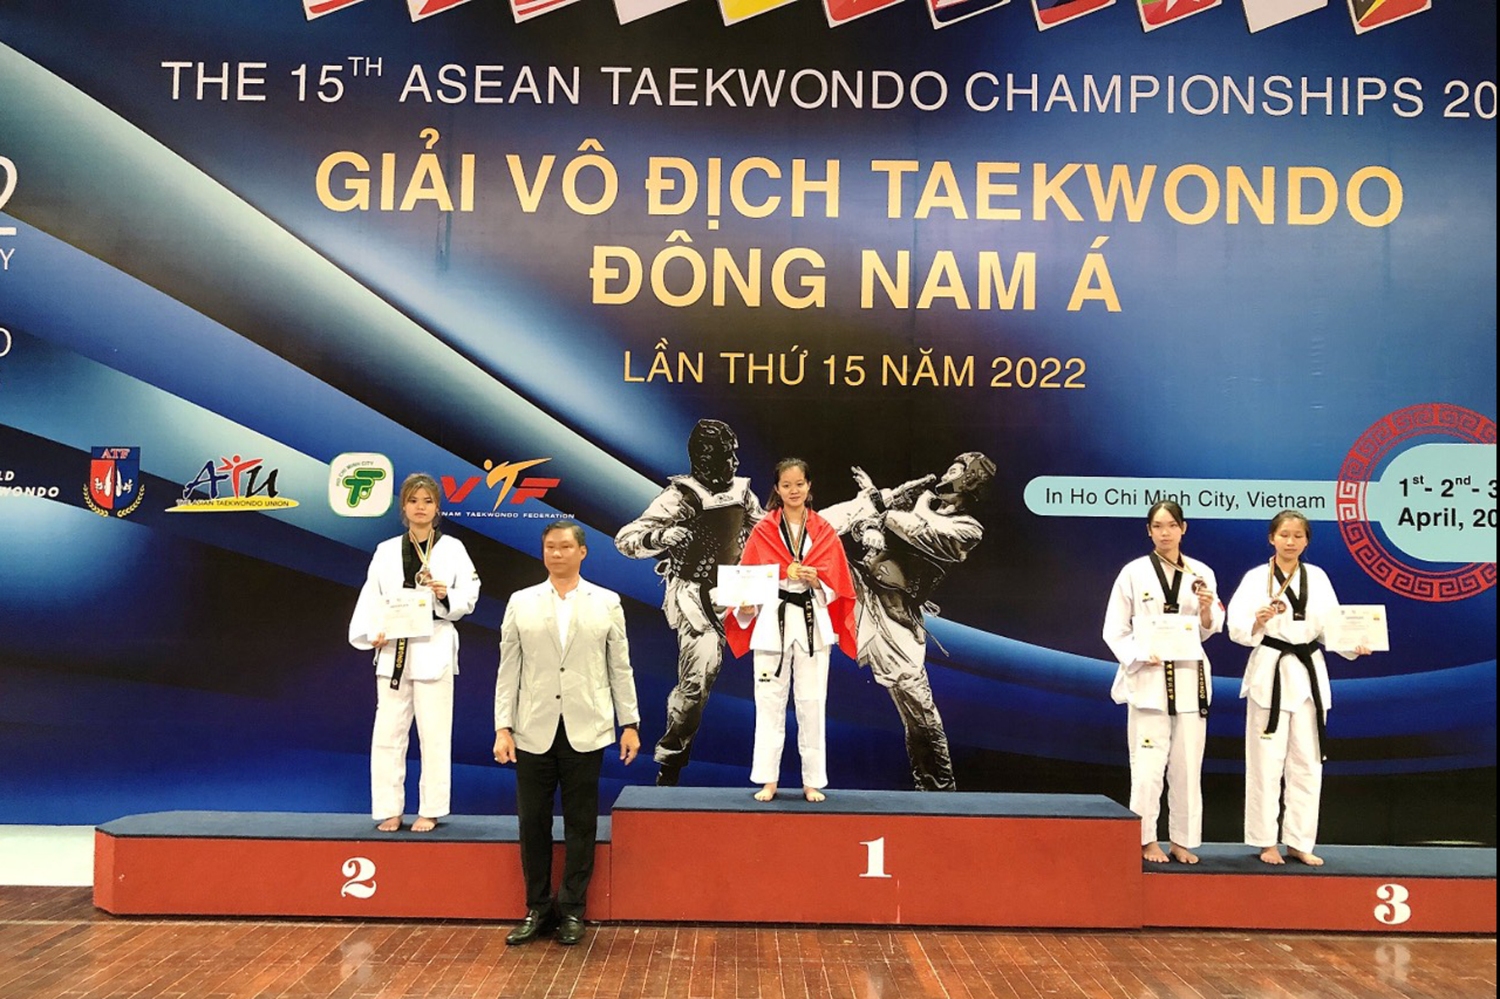 Vận động viên Lò Liến Du nhận huy chương bạc hạng cân 55kg Junior (lứa tuổi 15-17)